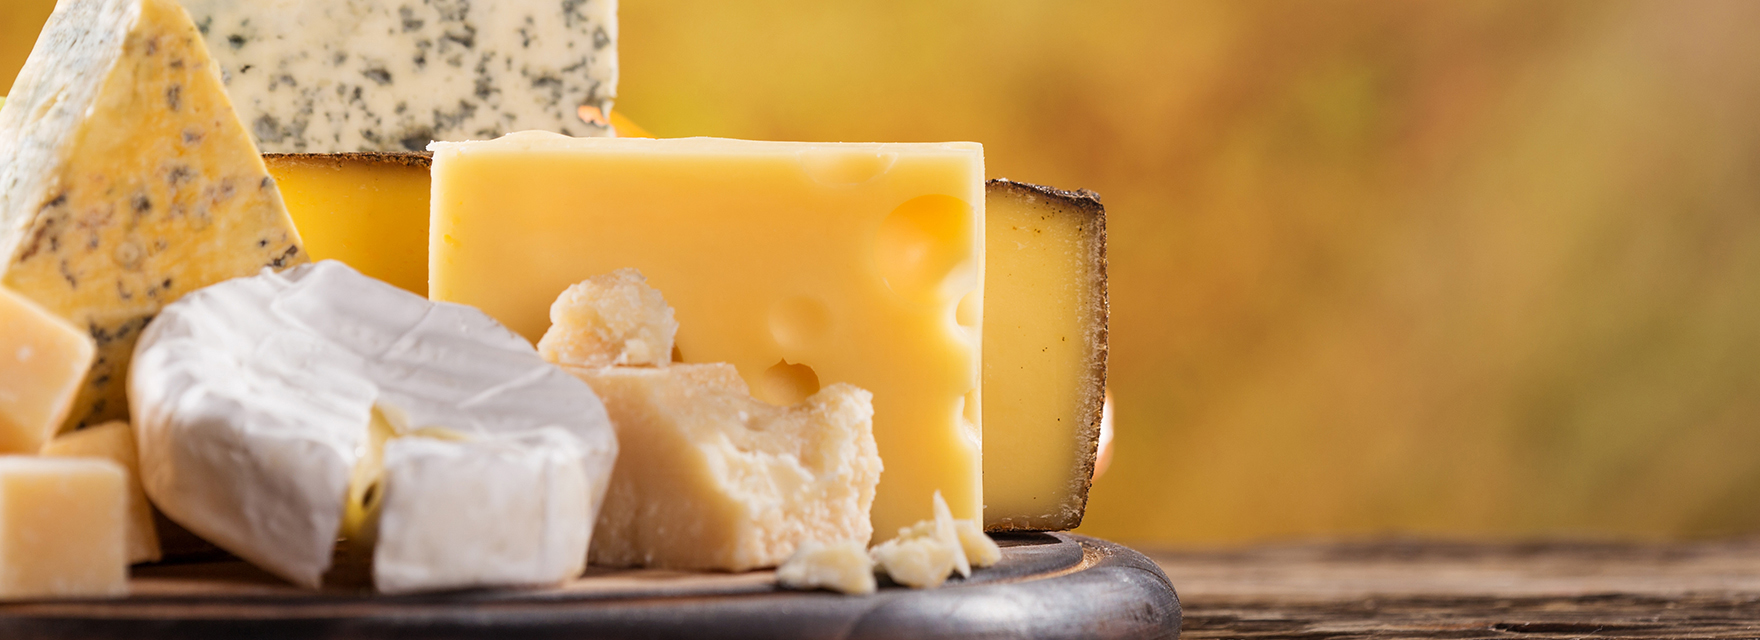 Mit tartalmaz az ERU ömlesztett sajt?